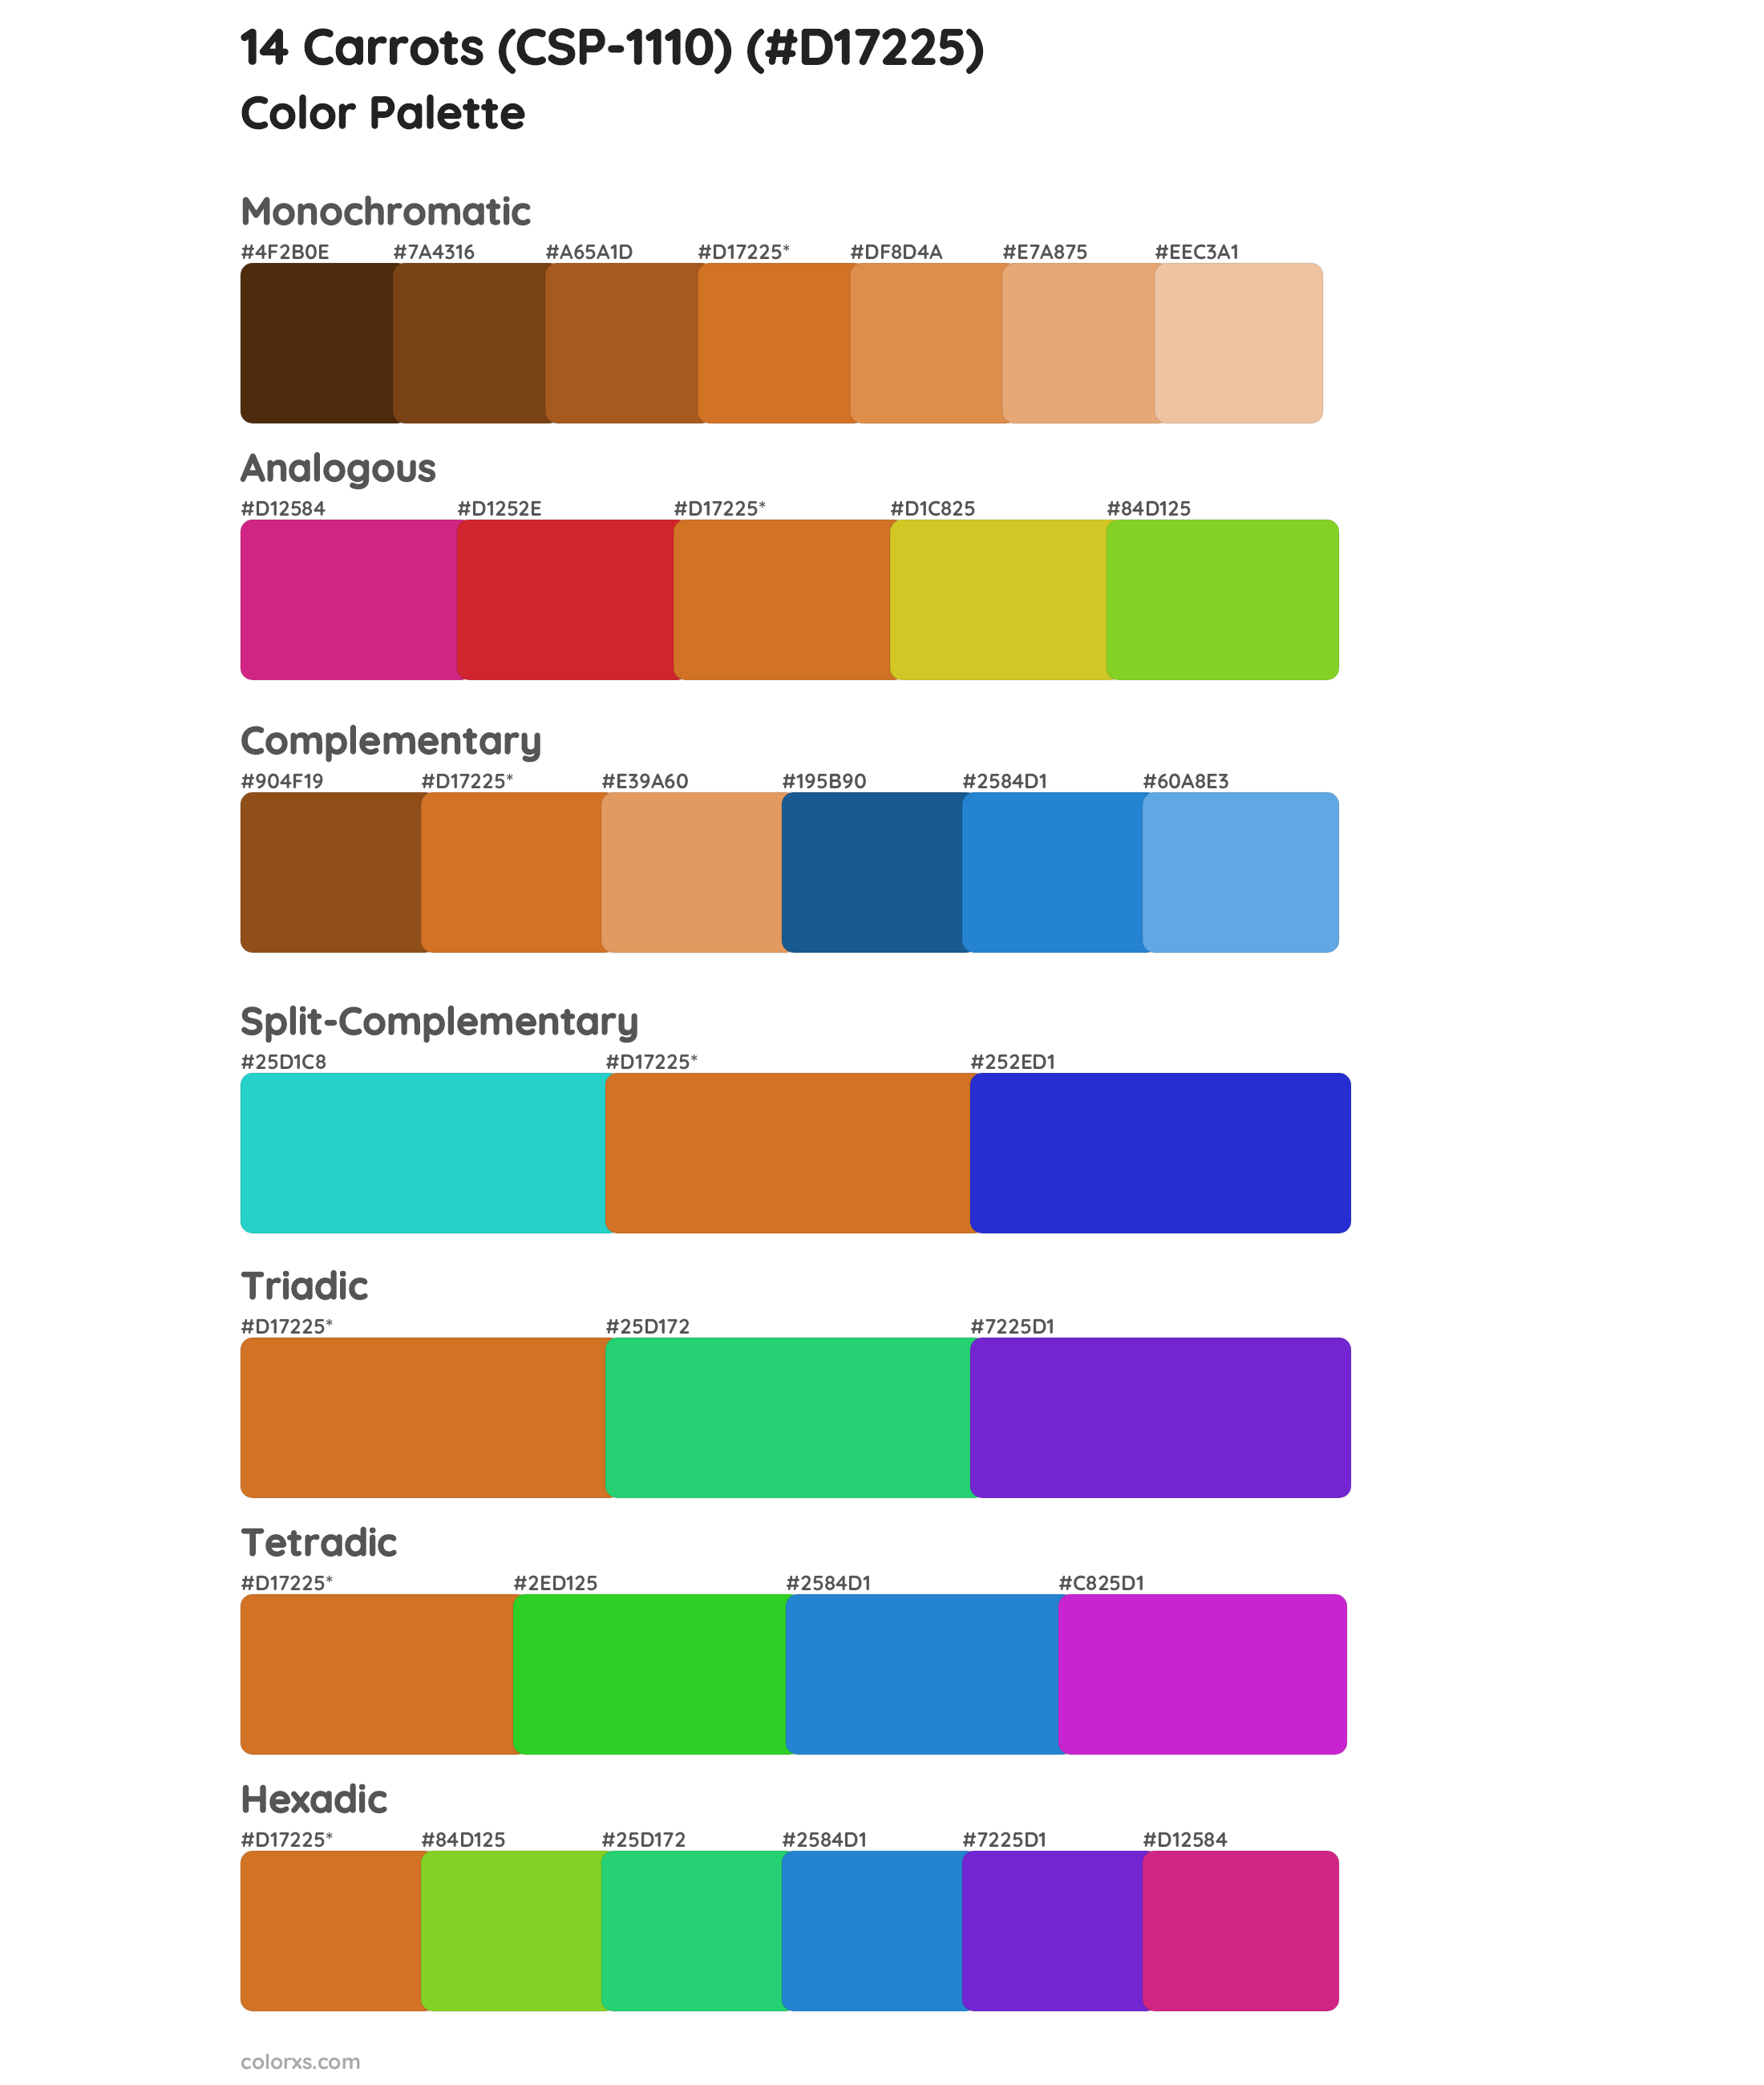 14 Carrots (CSP-1110) Color Scheme Palettes